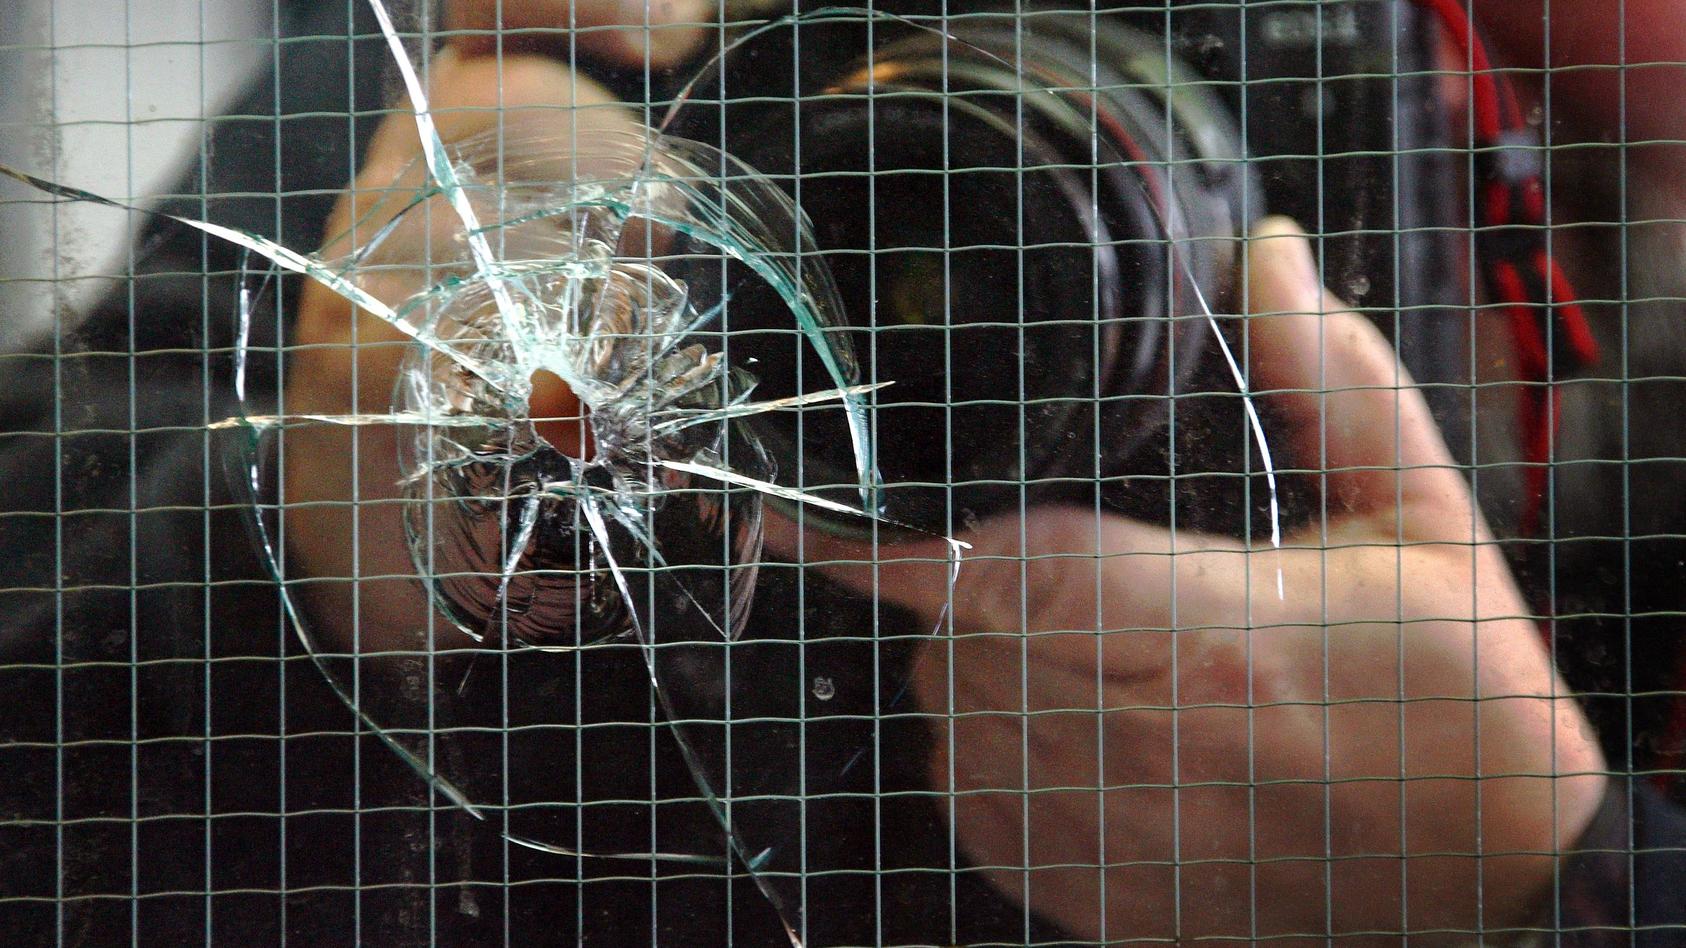 ARCHIV - Ein Bildjournalist fotografiert in Düsseldorf ein Einschussloch im Fenster einer Diskothek (Archivfoto vom 23.03.2007). Bei einer Schießerei vor dem Tanzlokal waren zuvor drei Menschen verletzt worden. Am Dienstag (08.05.2007) wird in Berlin